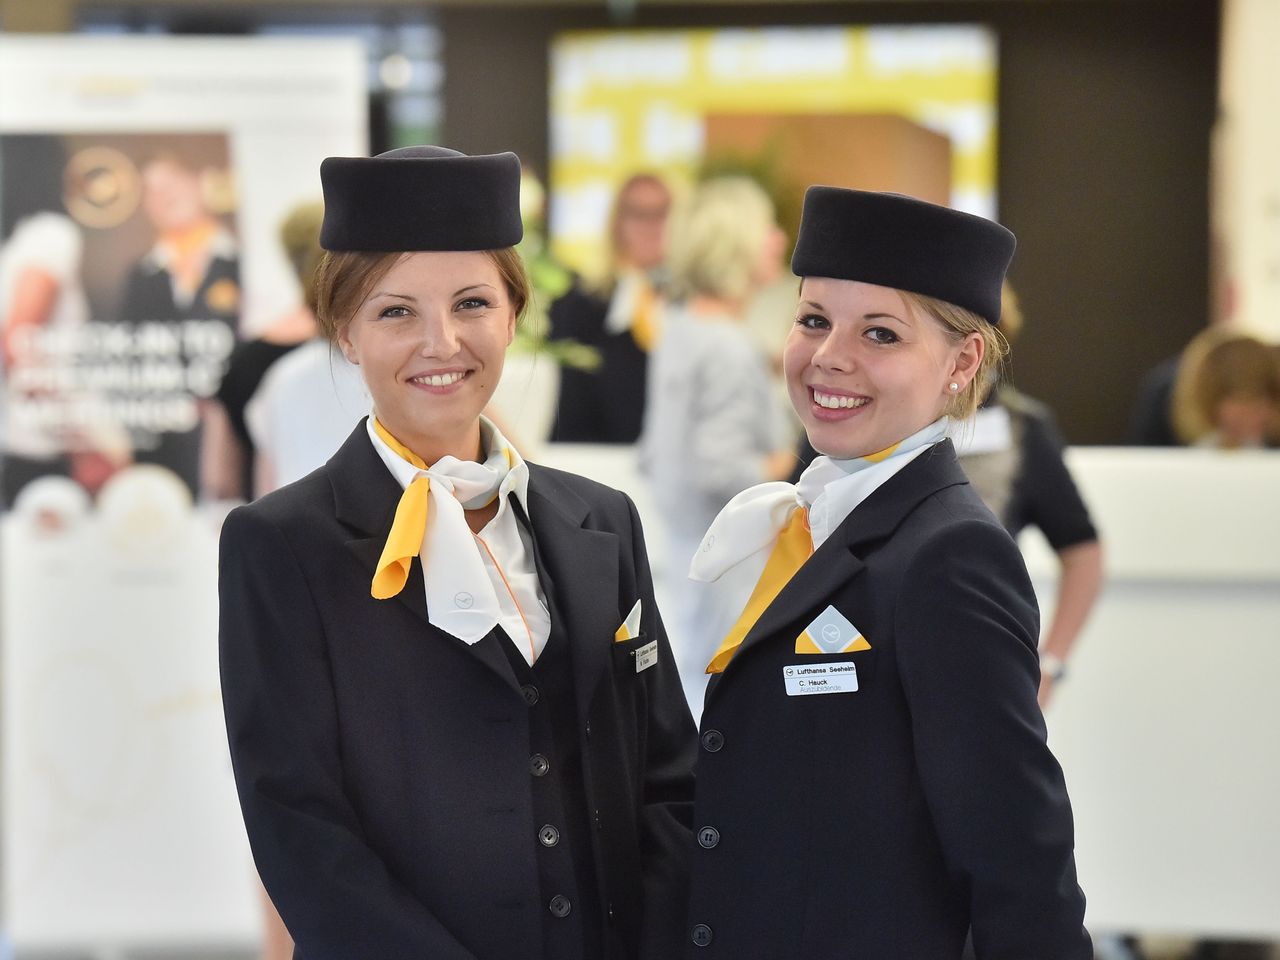 Lufthansa Seeheim Langstrecken-Erlebnis